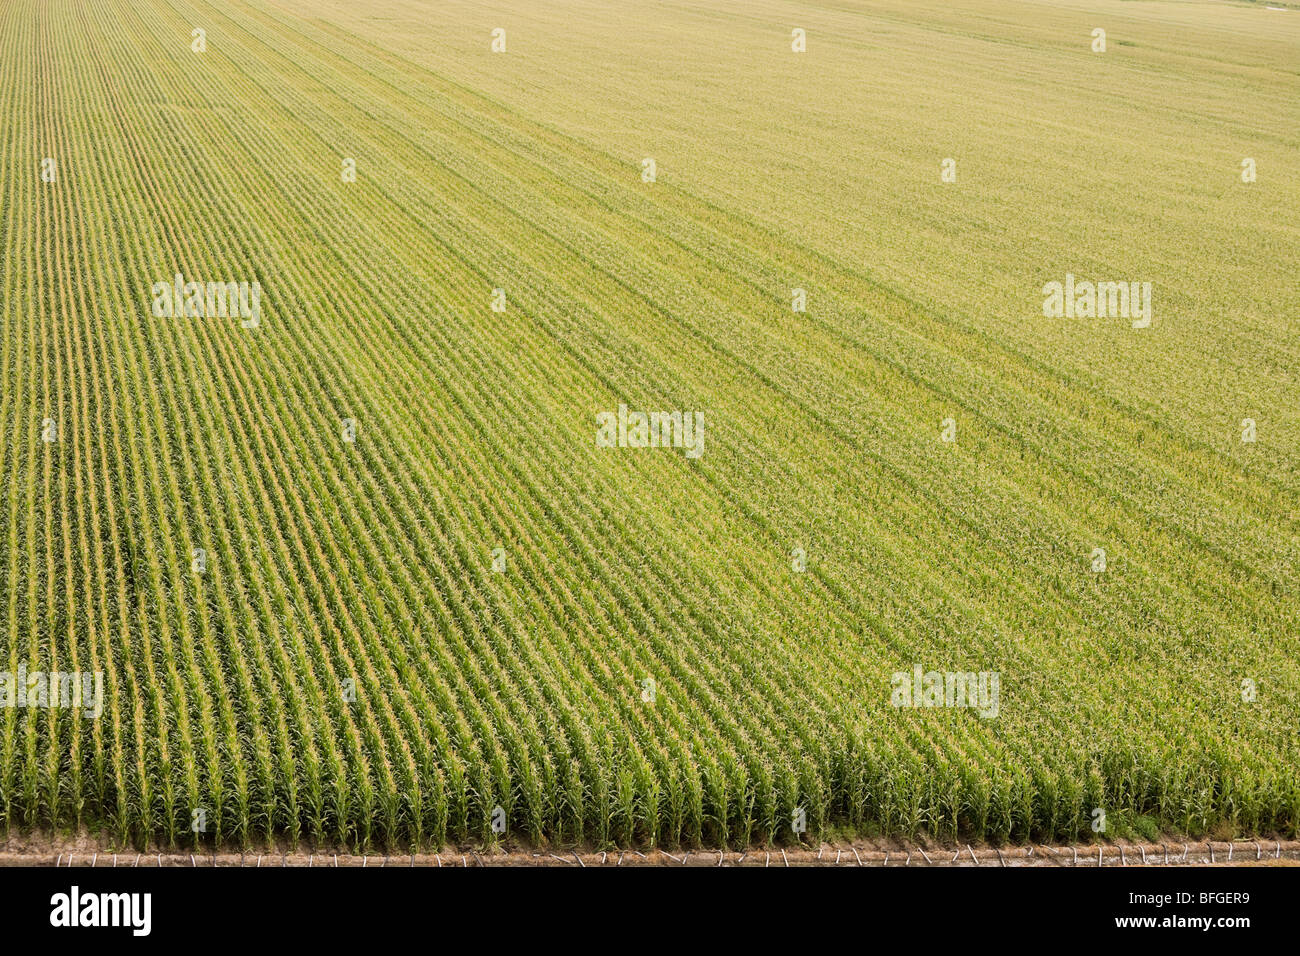 Vista aérea de un campo de maíz de maíz estadounidense con el riego en verano. North Platte, Nebraska, Great Plains, EE.UU. US Foto de stock